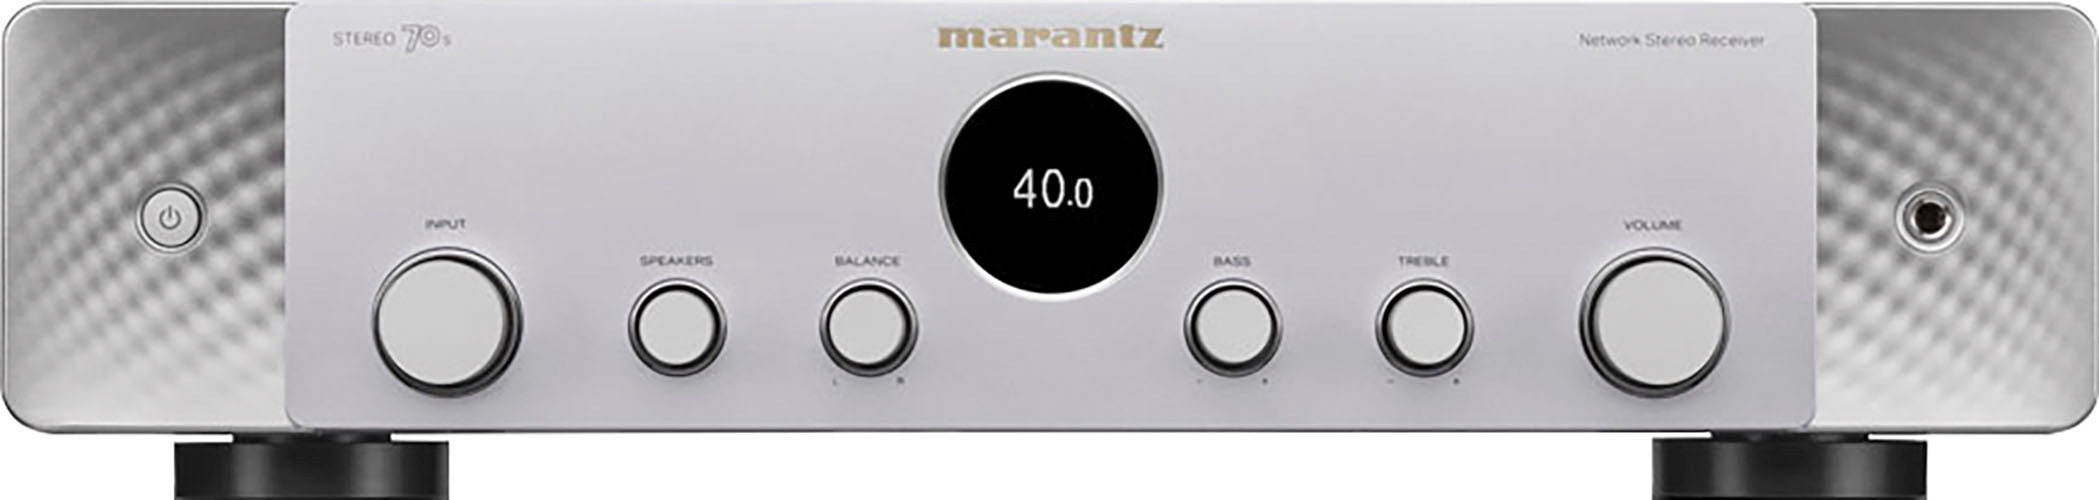 Marantz AV-Receiver »Stereo 70S«, 2.1, (Bluetooth-WLAN-LAN (Ethernet)  Sprachsteuerung-Sleeptimer-Installations-Assistent-DAB+-FM Tuner) auf  Rechnung bestellen